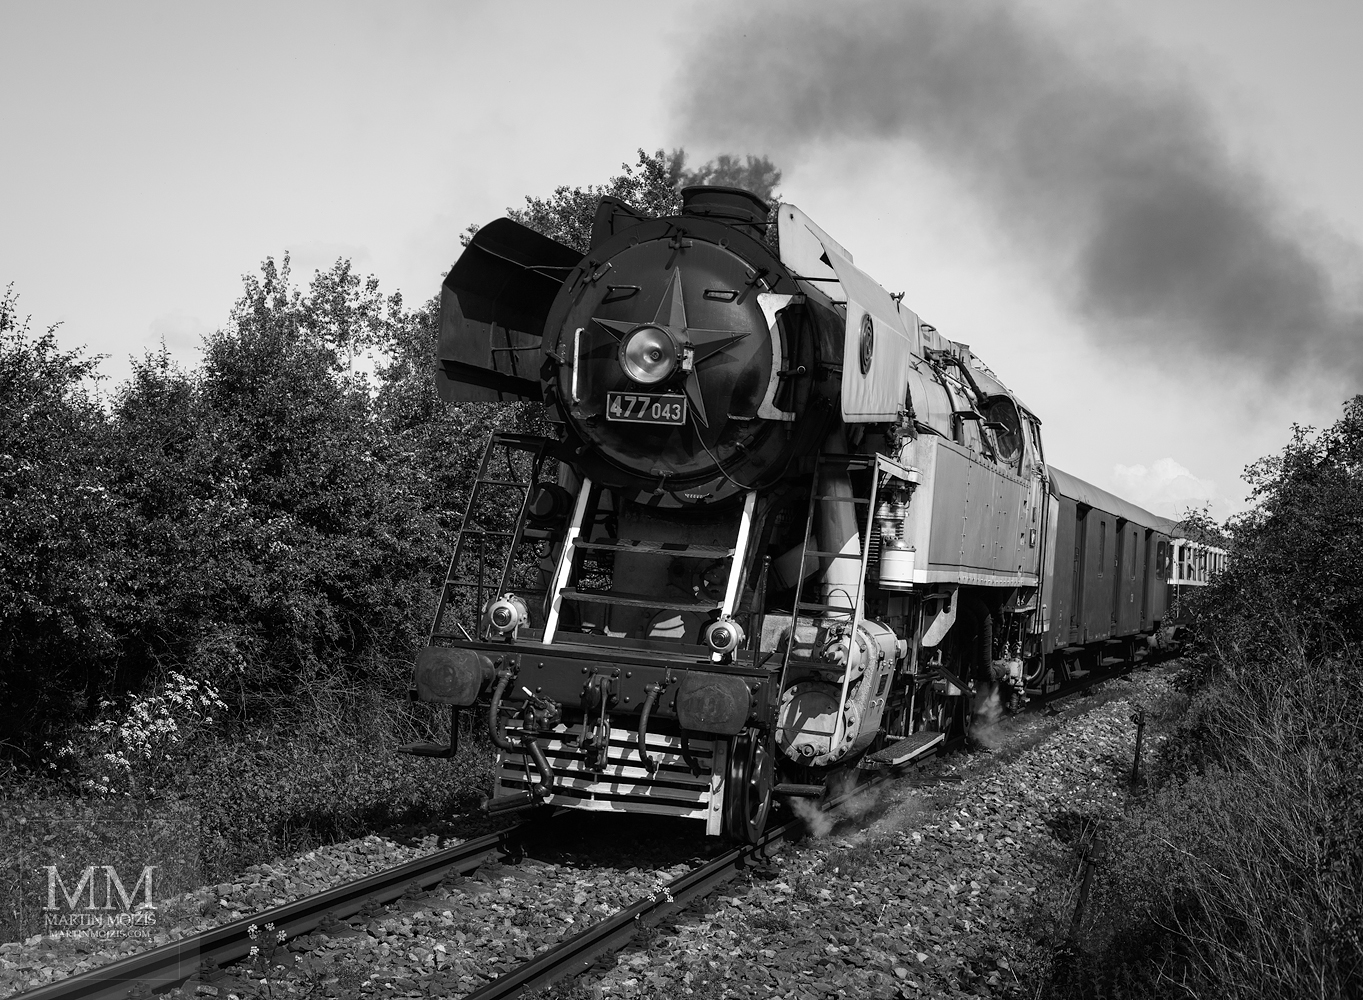 Velkoformátová umělecká fotografie parní lokomotivy č. 477 043 Papoušek v čele osobního vlaku. Martin Mojžíš.